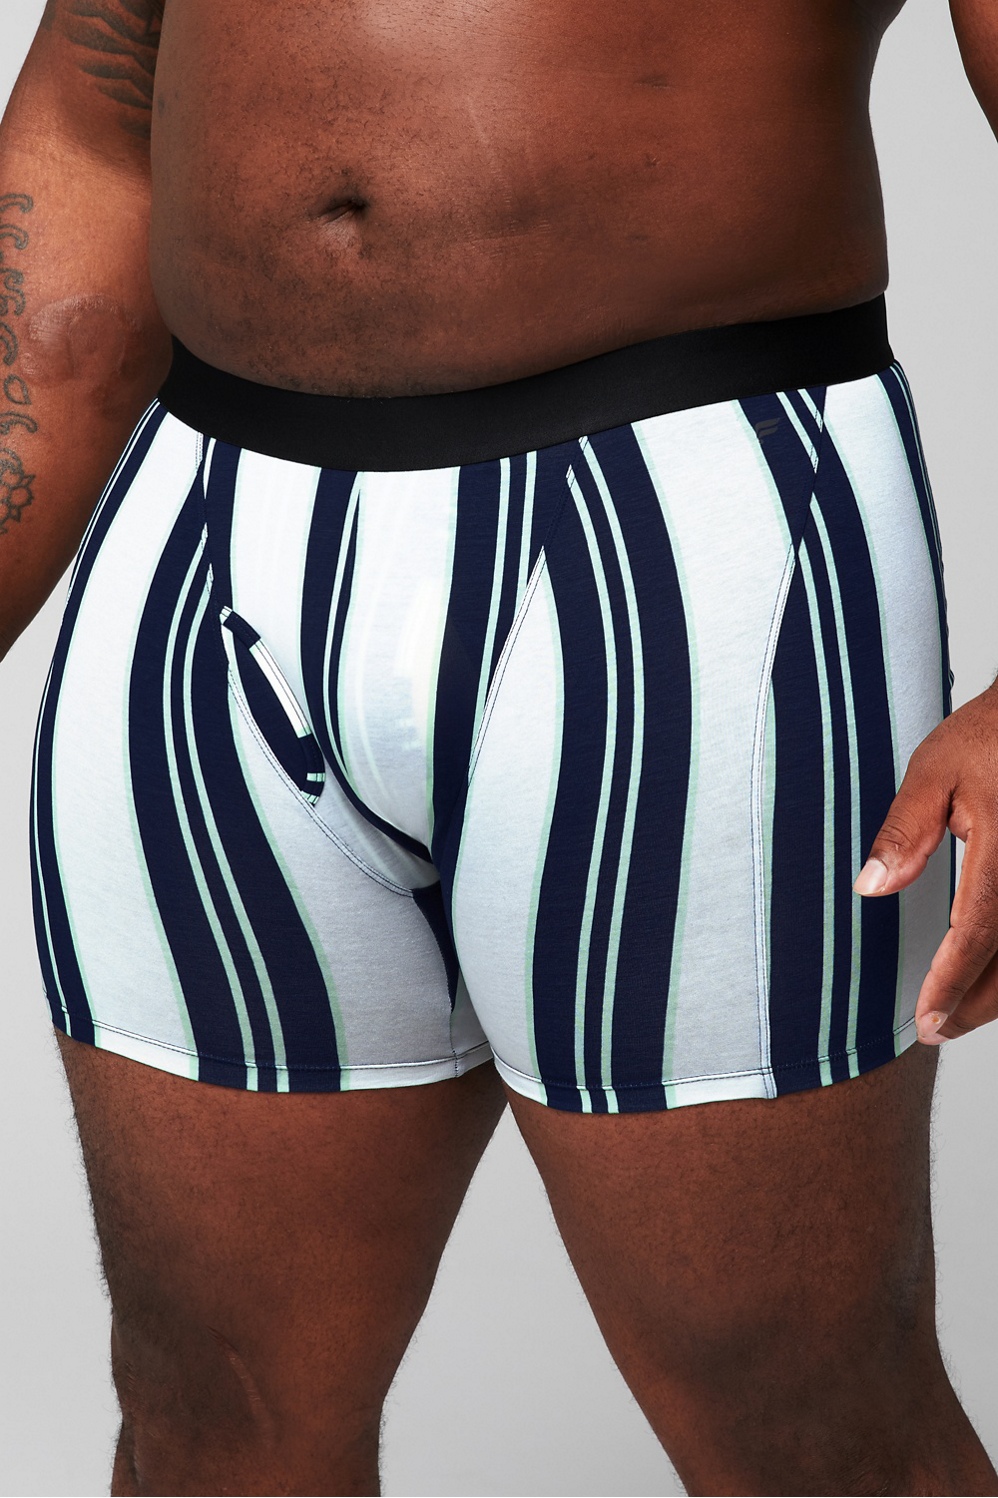 JFORLESS men's super soft breathable boxer brief men seamless underwear  free size fits 24-36 waistline